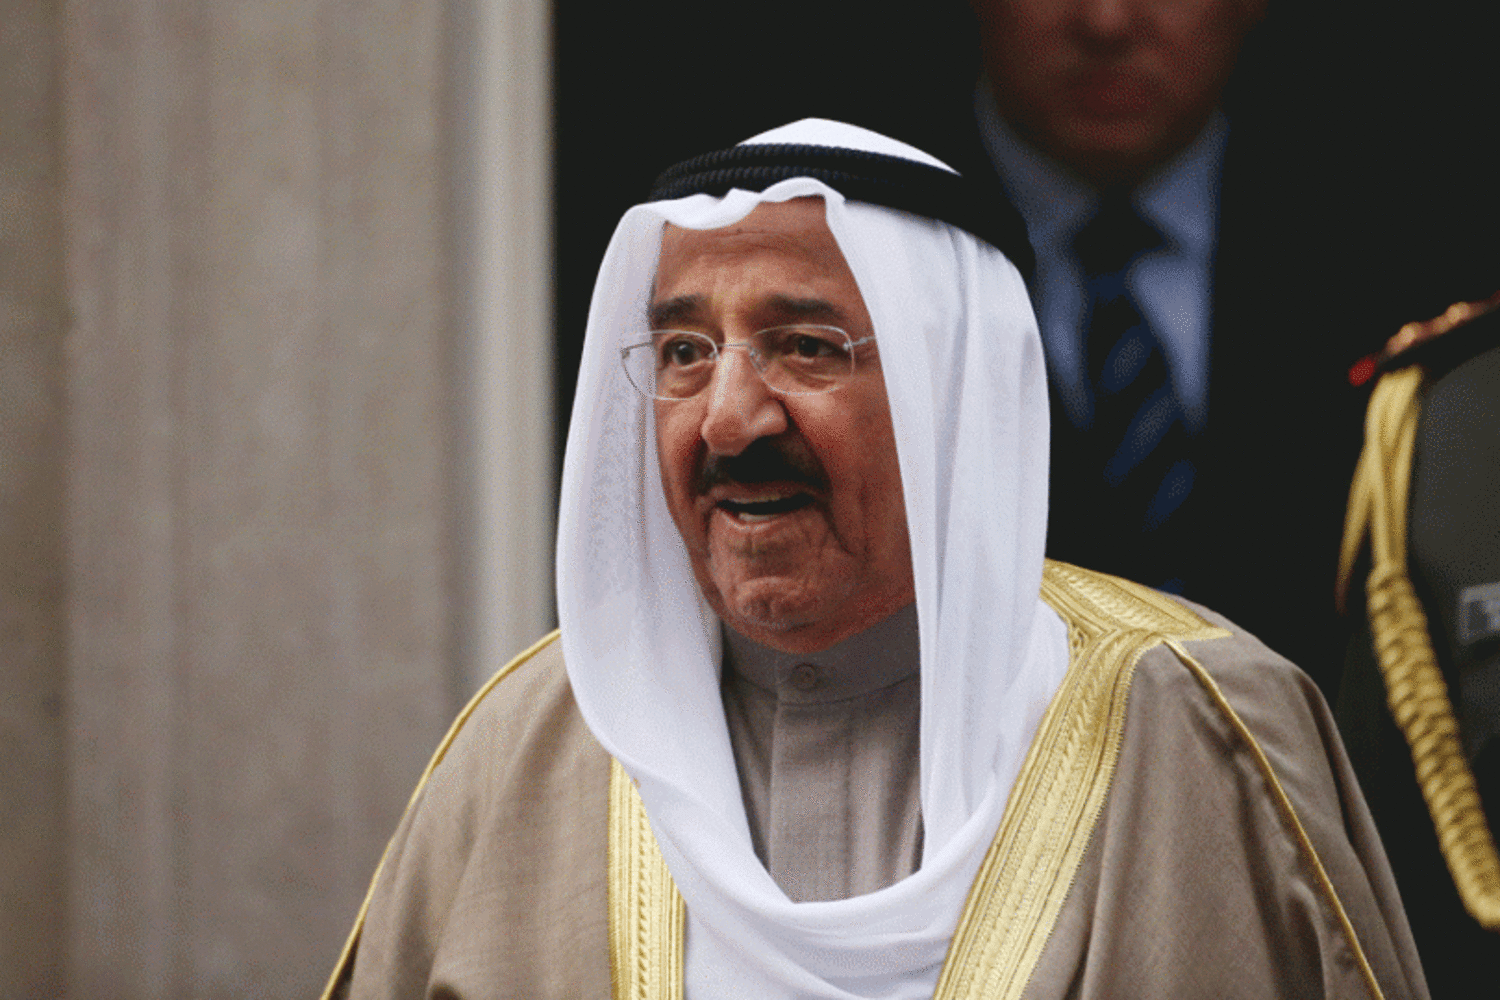 Kuwait’s Emir Sheikh Sabah al-Ahmad al-Jaber al-Sabah. (Photo: Getty Images)